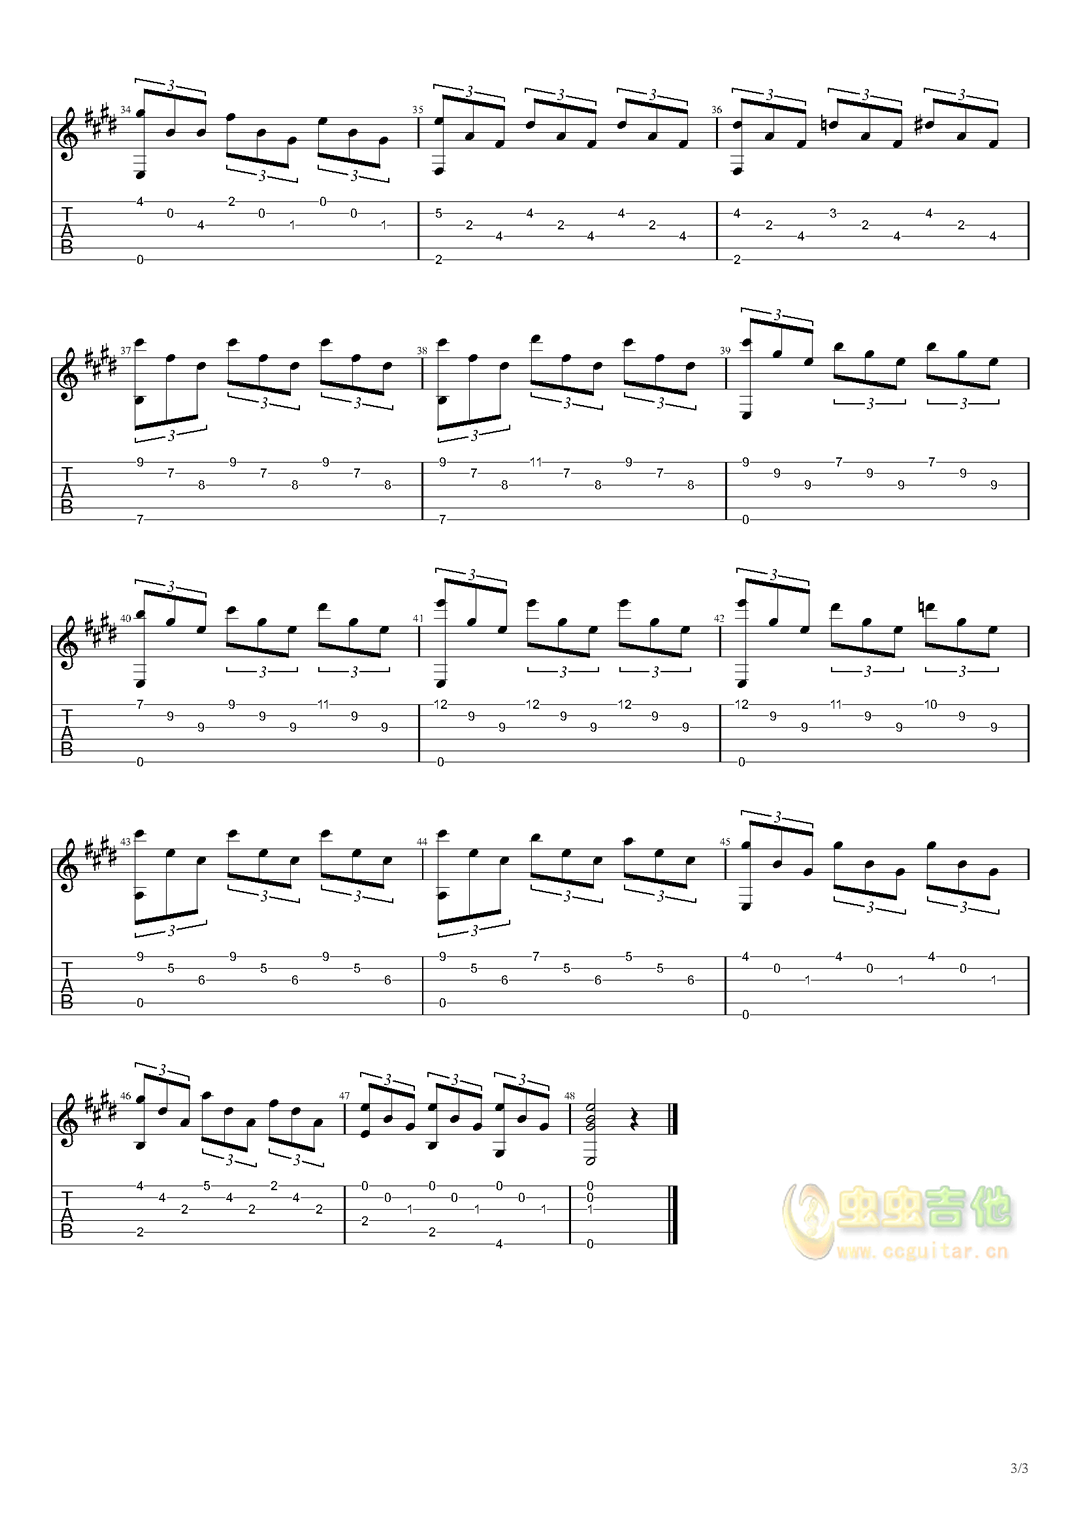 古典吉他名曲谱《小罗曼斯》路易斯·华克尔-古典吉他谱 - 乐器学习网